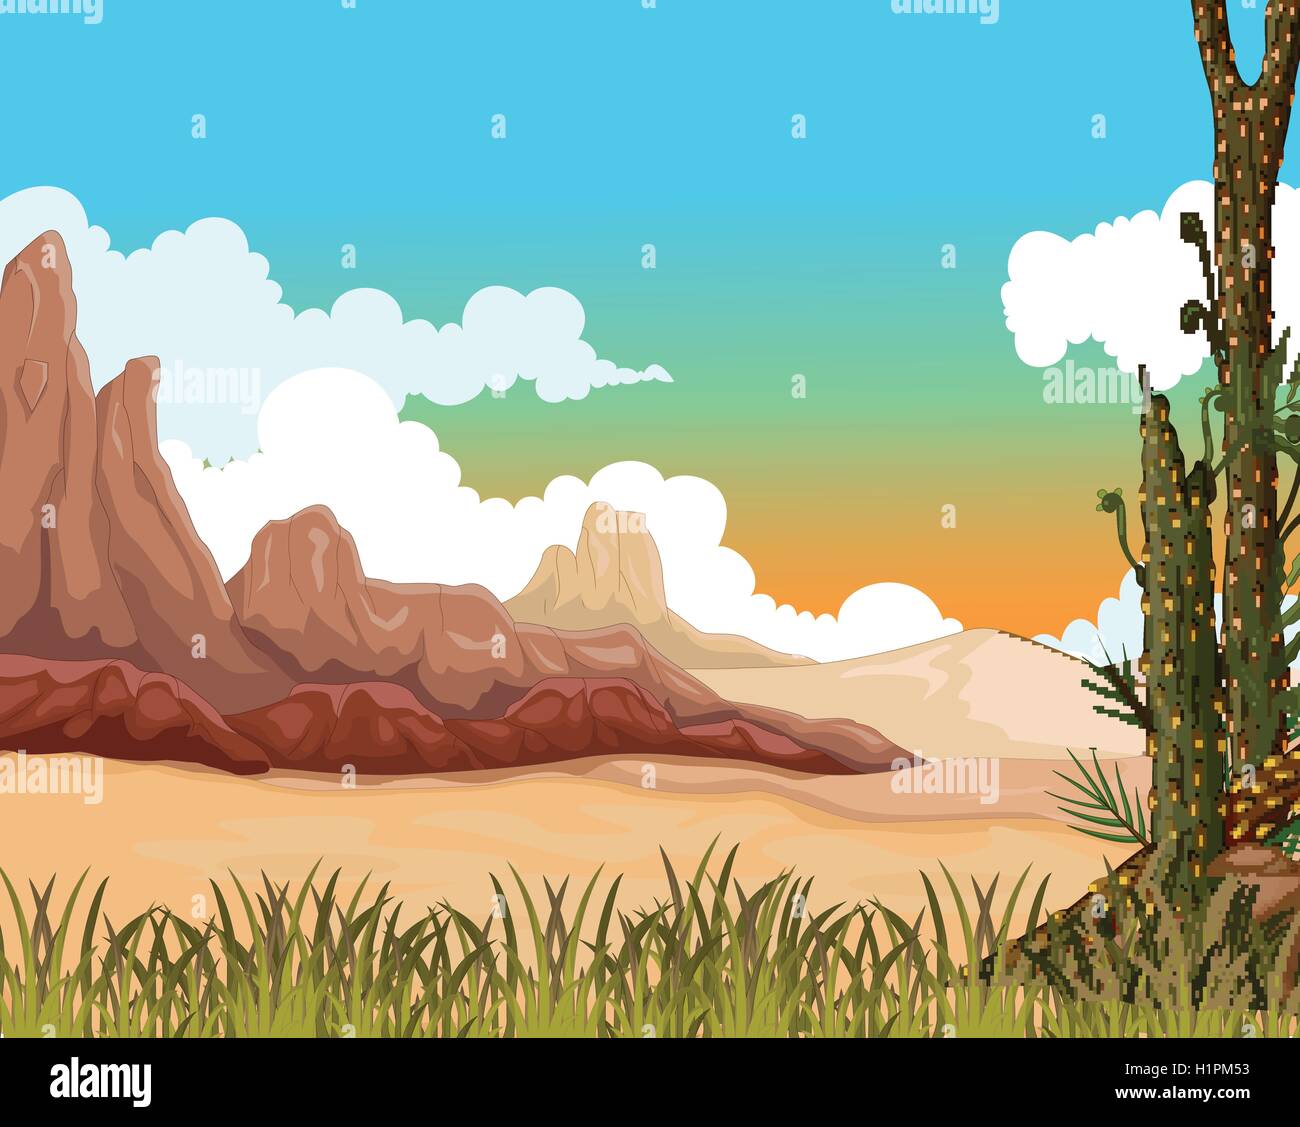 La bellezza del paesaggio con sfondo deserto Illustrazione Vettoriale